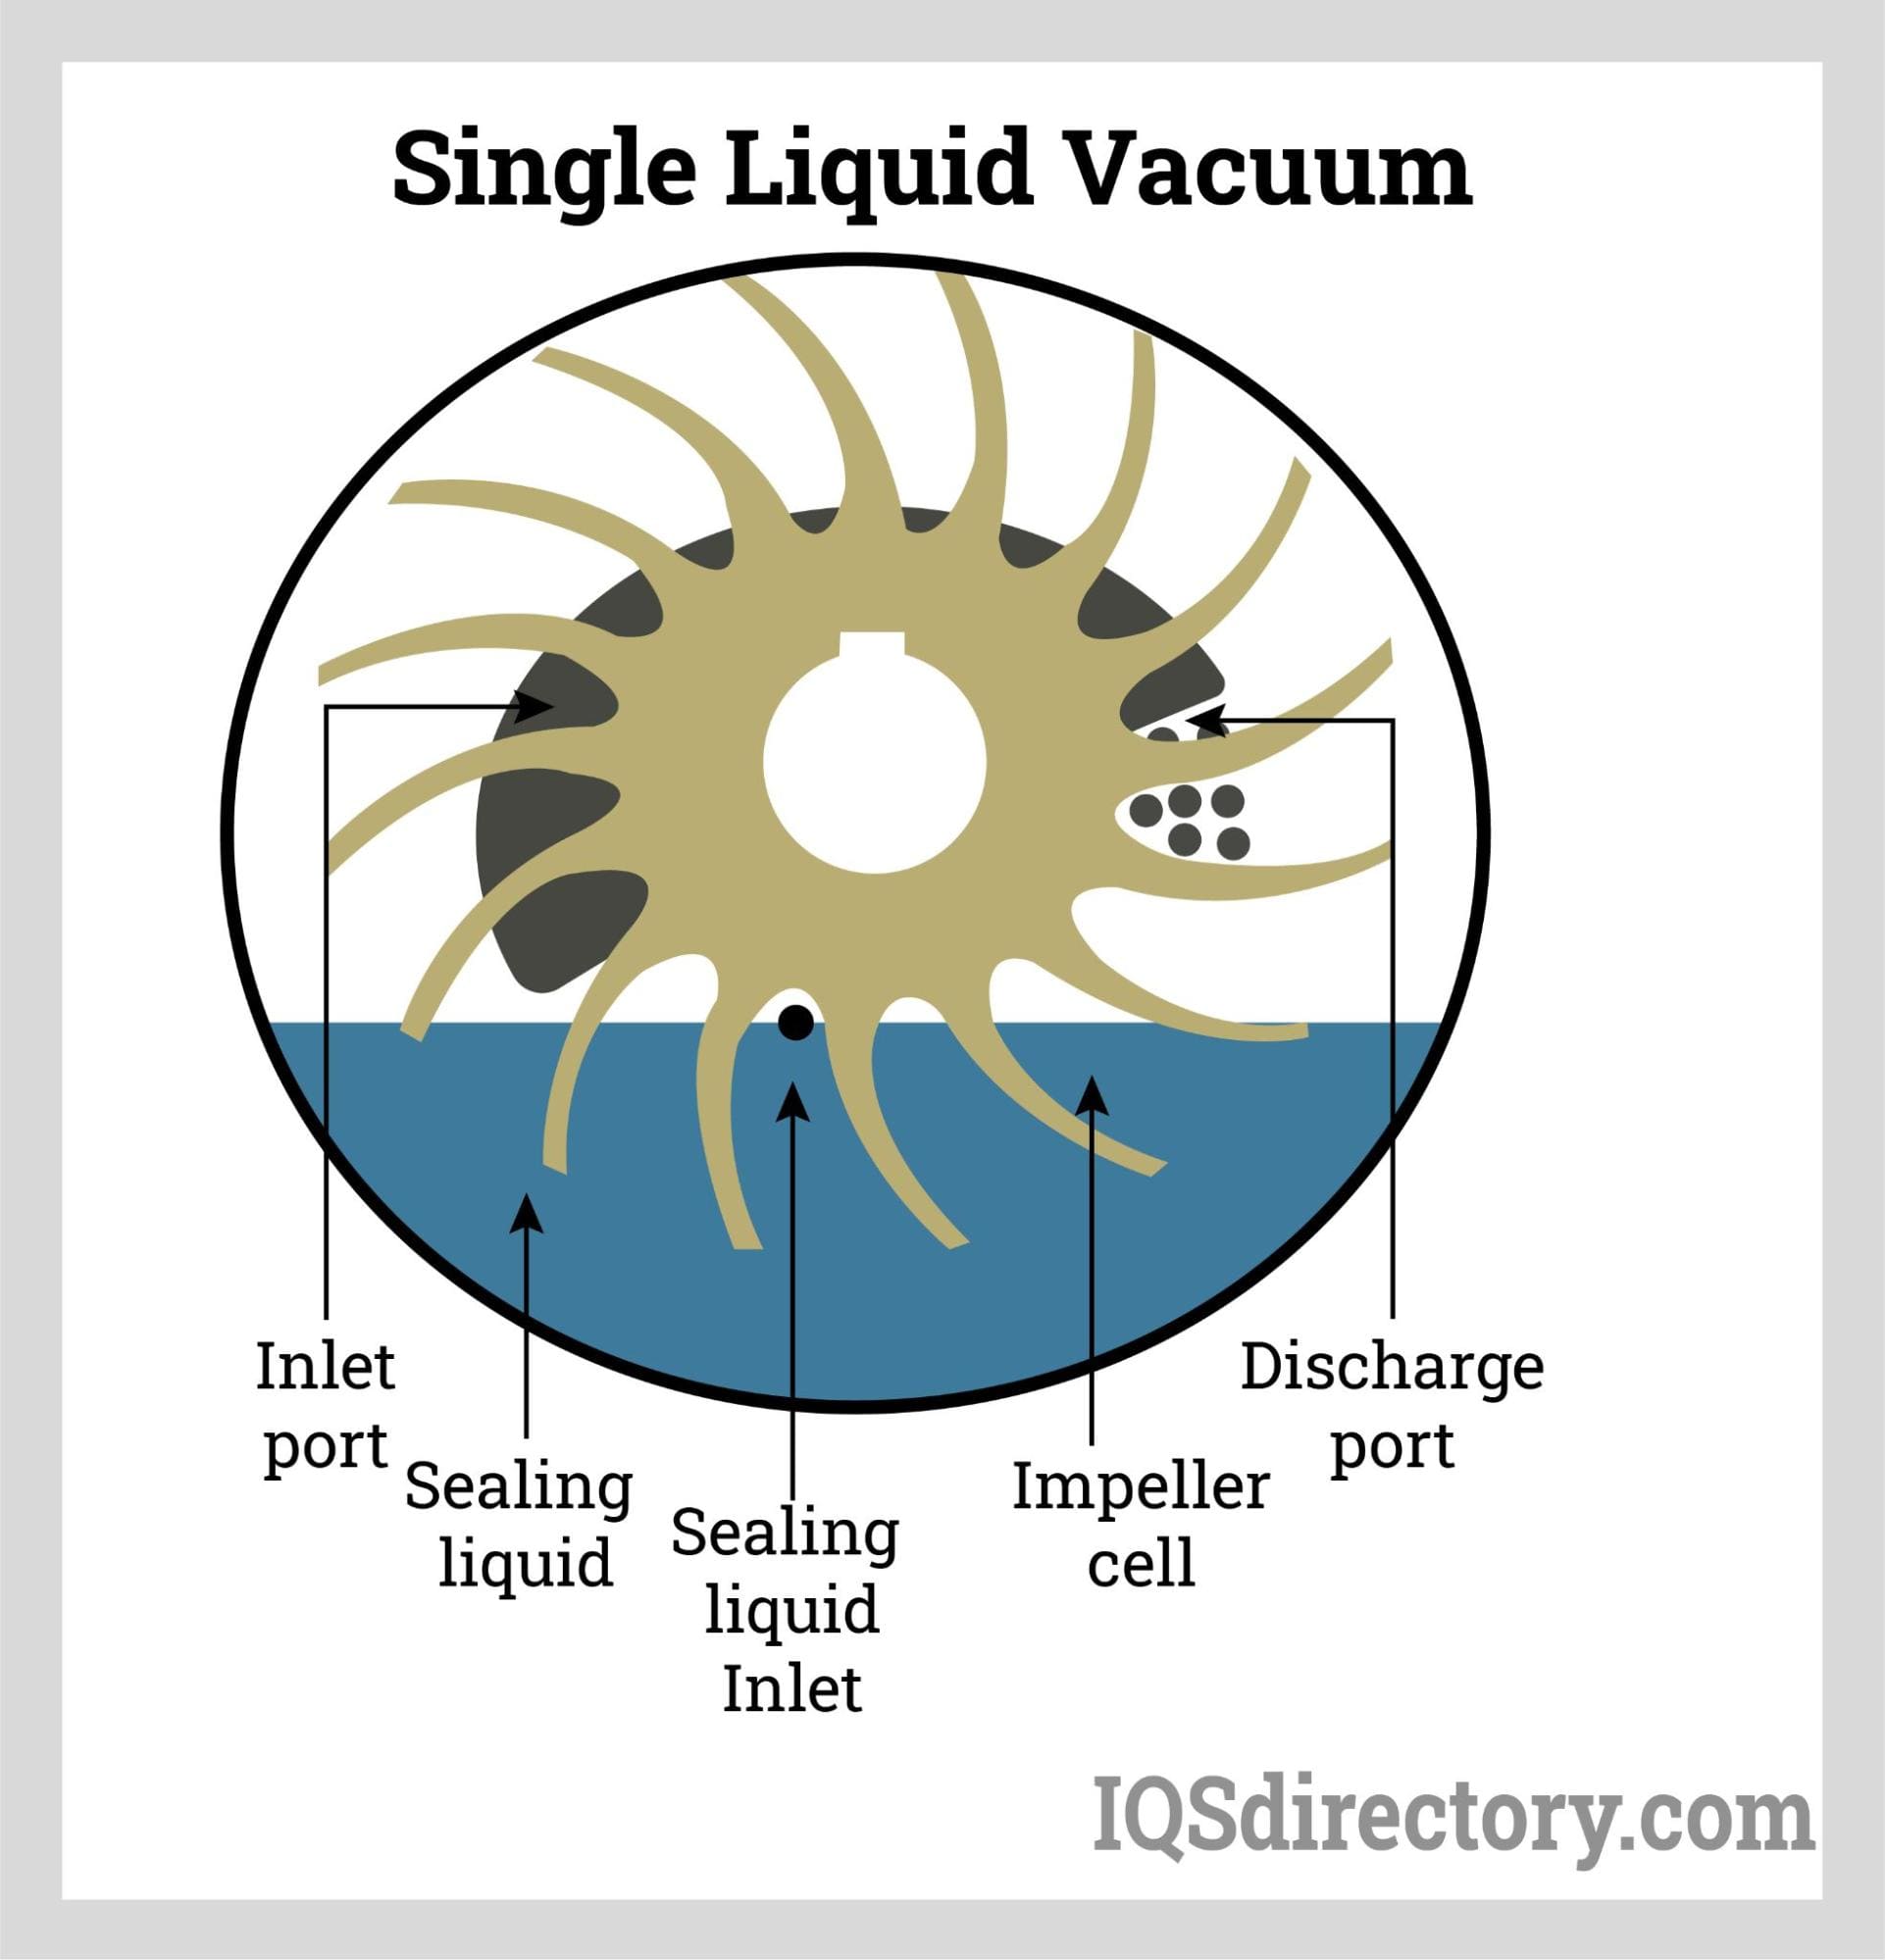 Single Liquid Vacuum